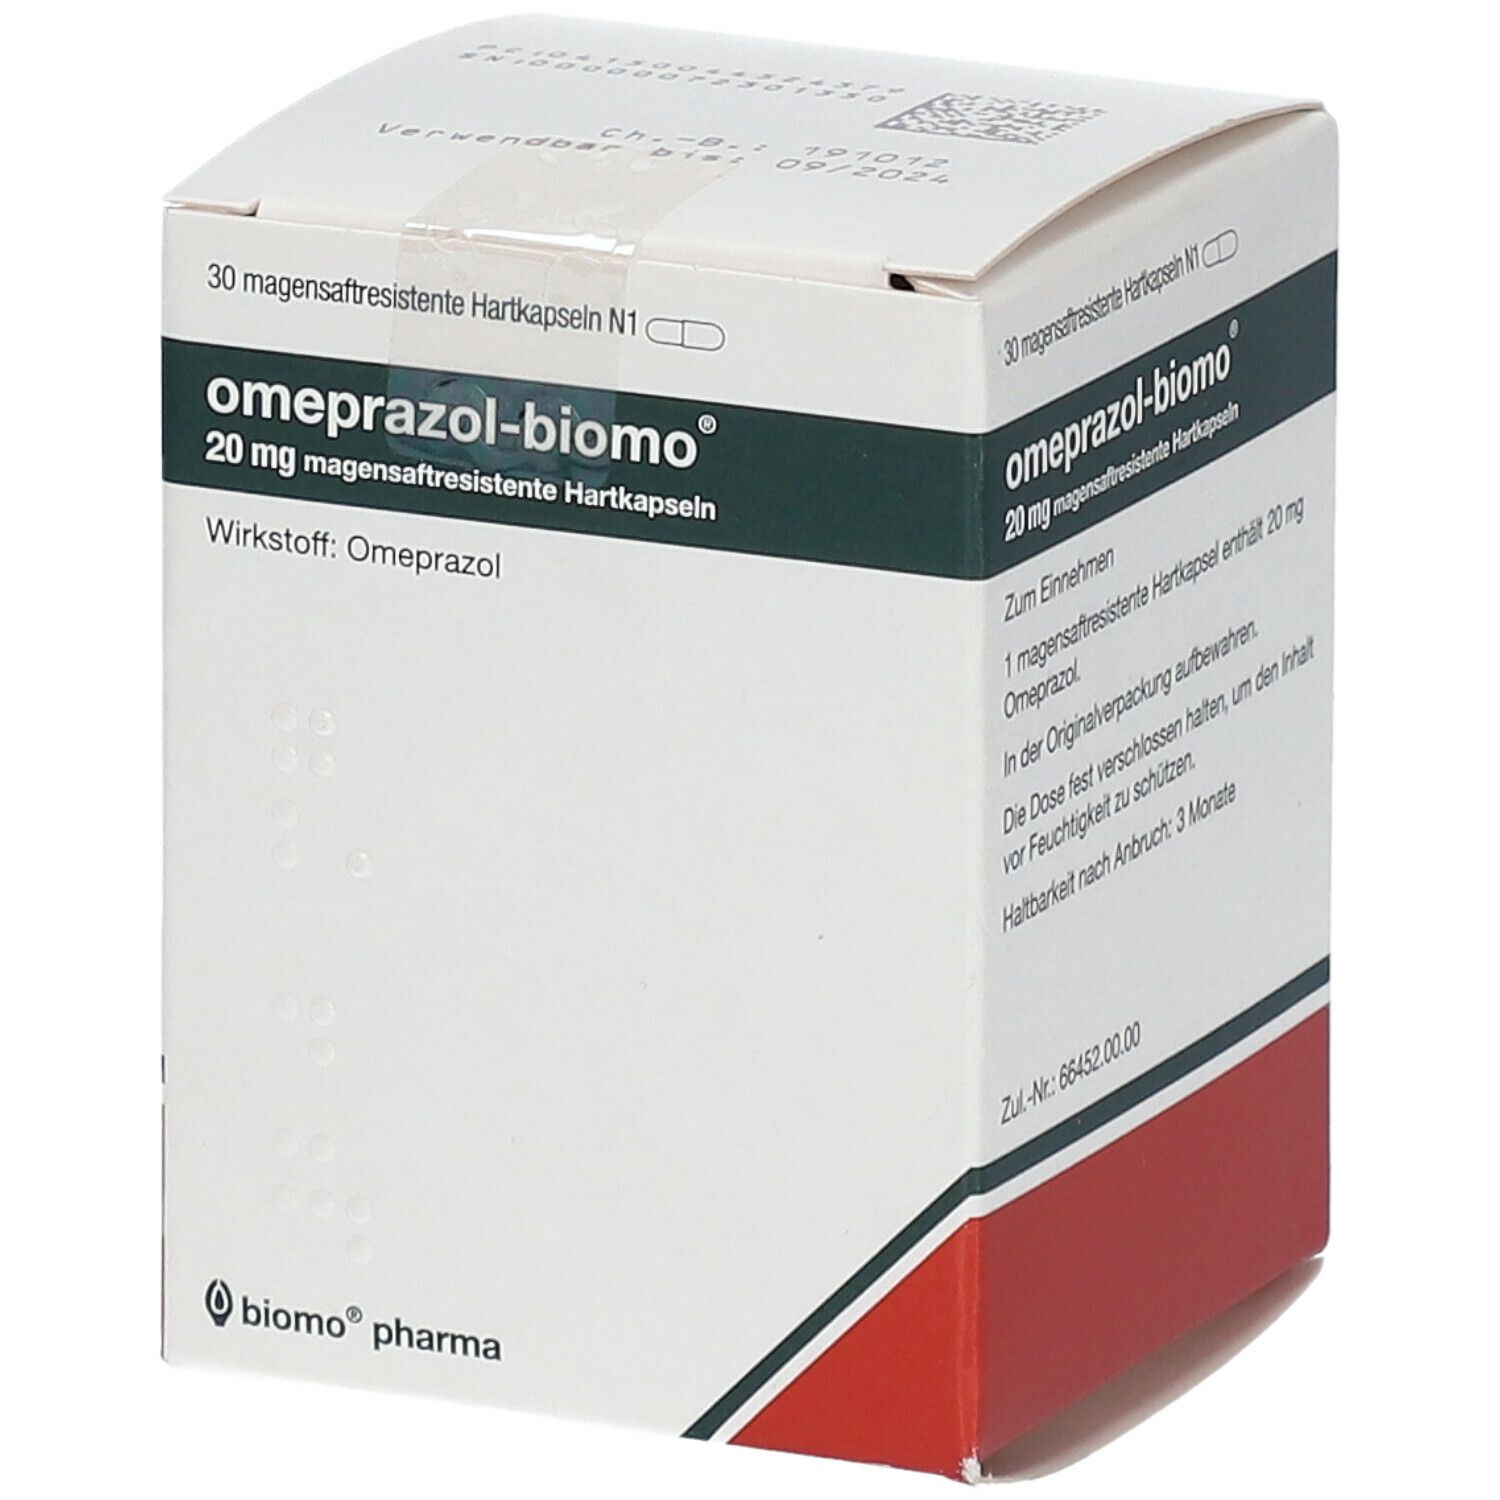 omeprazol-biomo® 20 mg